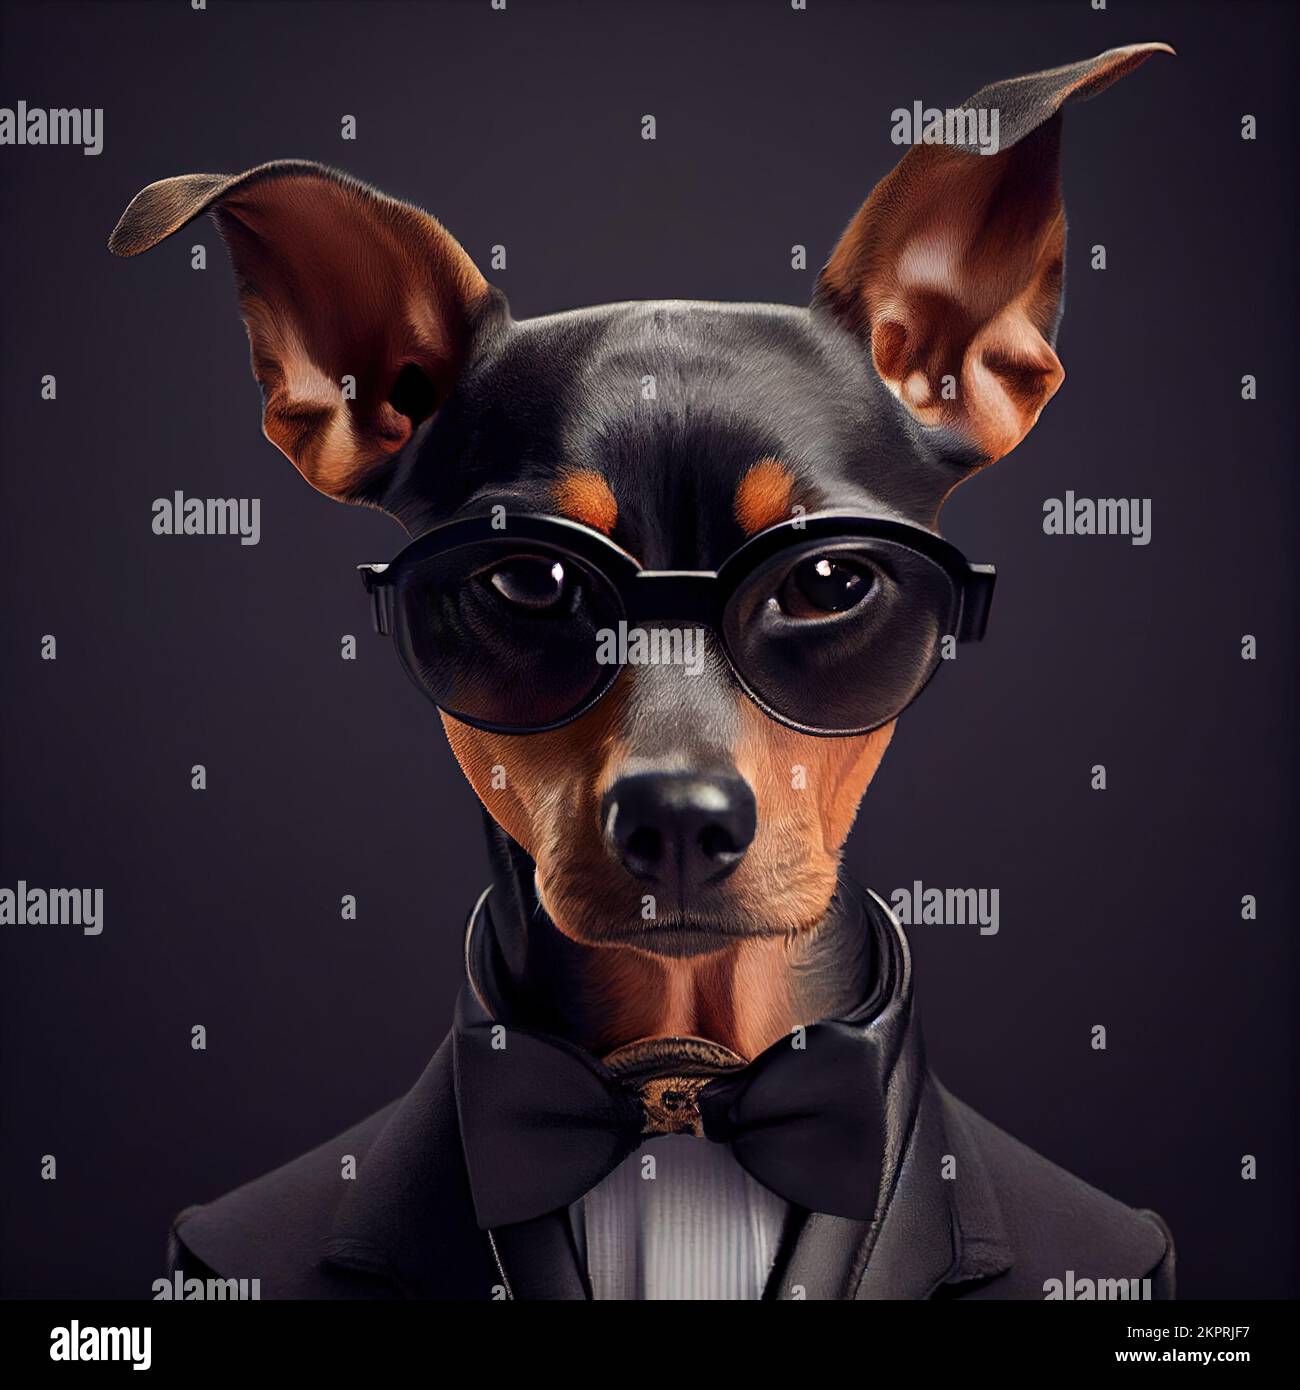 Studio anthropomorphique tourné d'un joli chien Pinscher en costume. Illustration générée numériquement. Banque D'Images